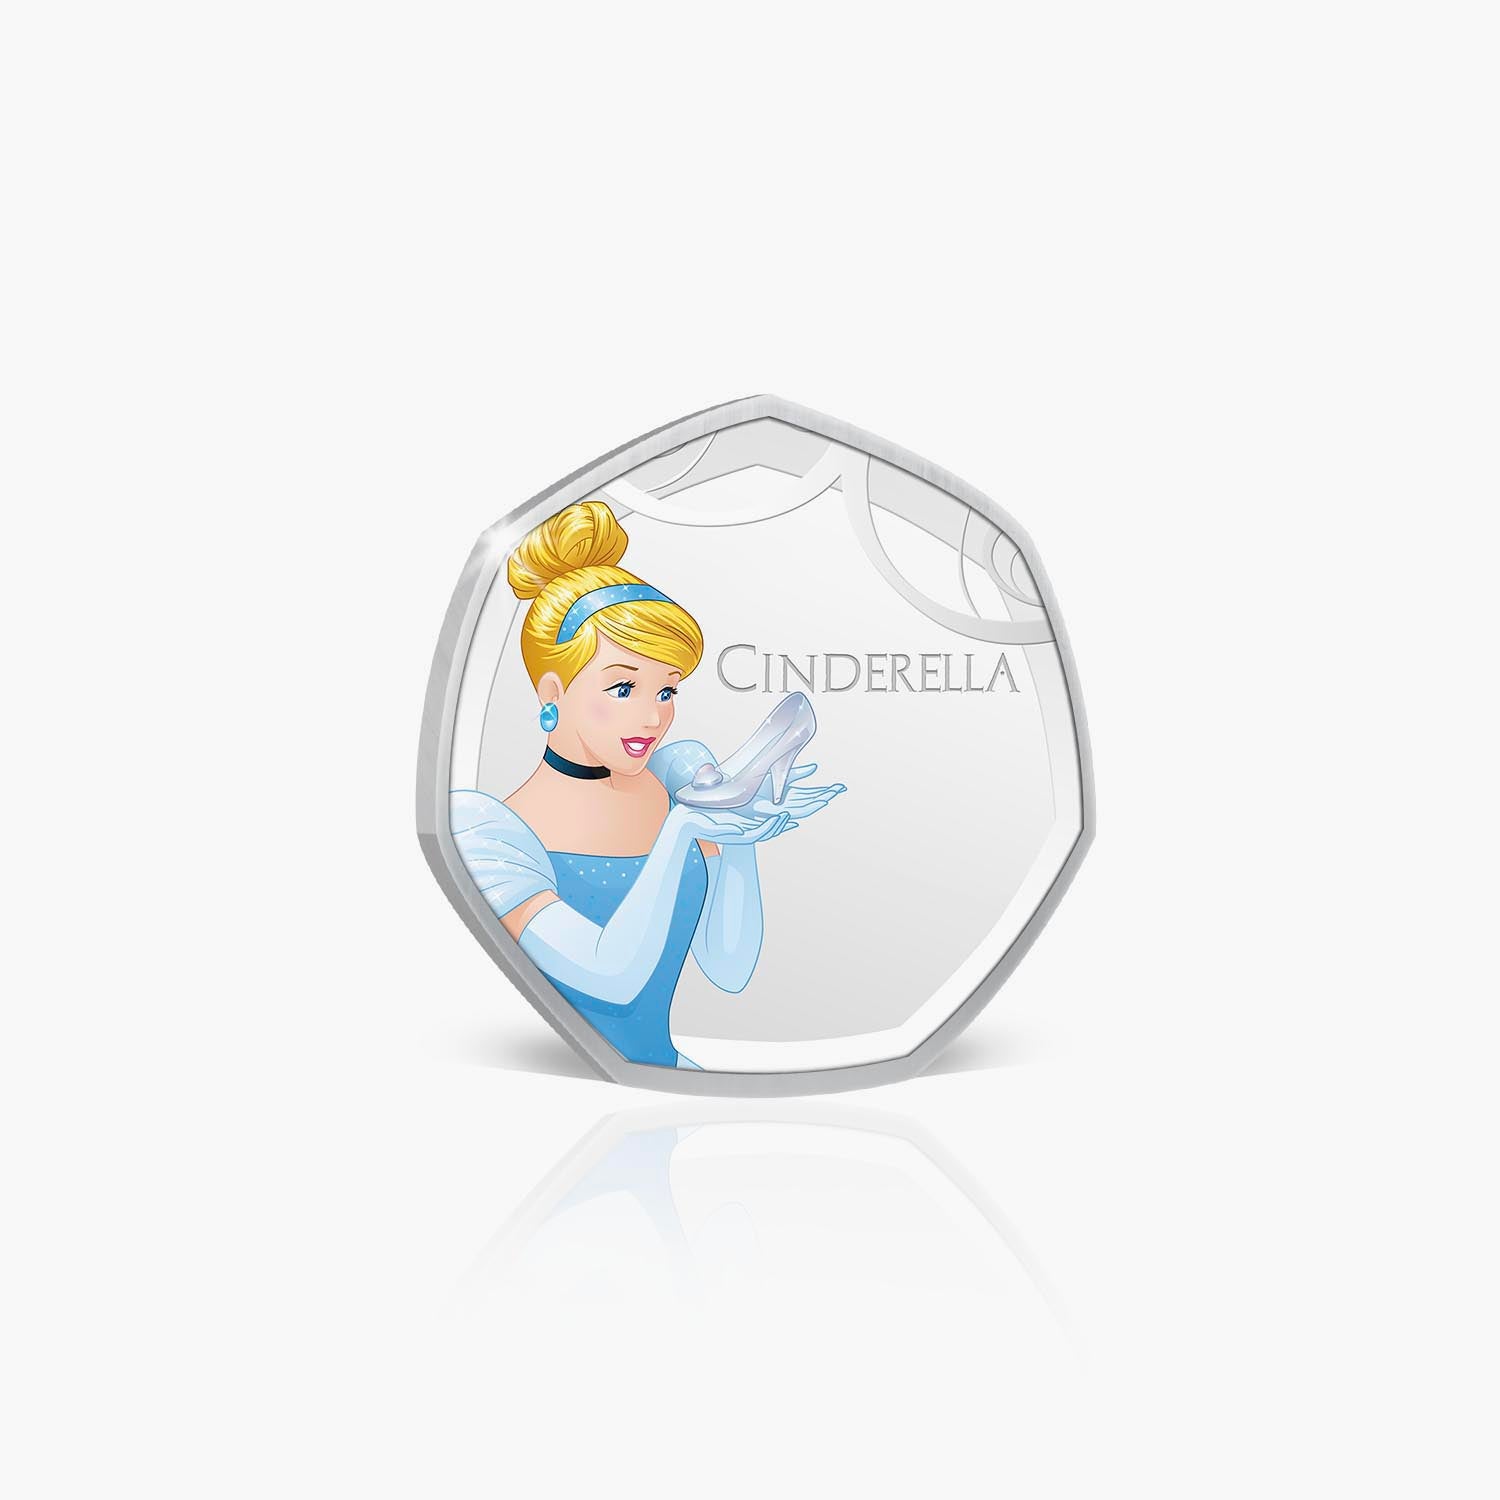 Cinderella Silver-Plated Commemorative